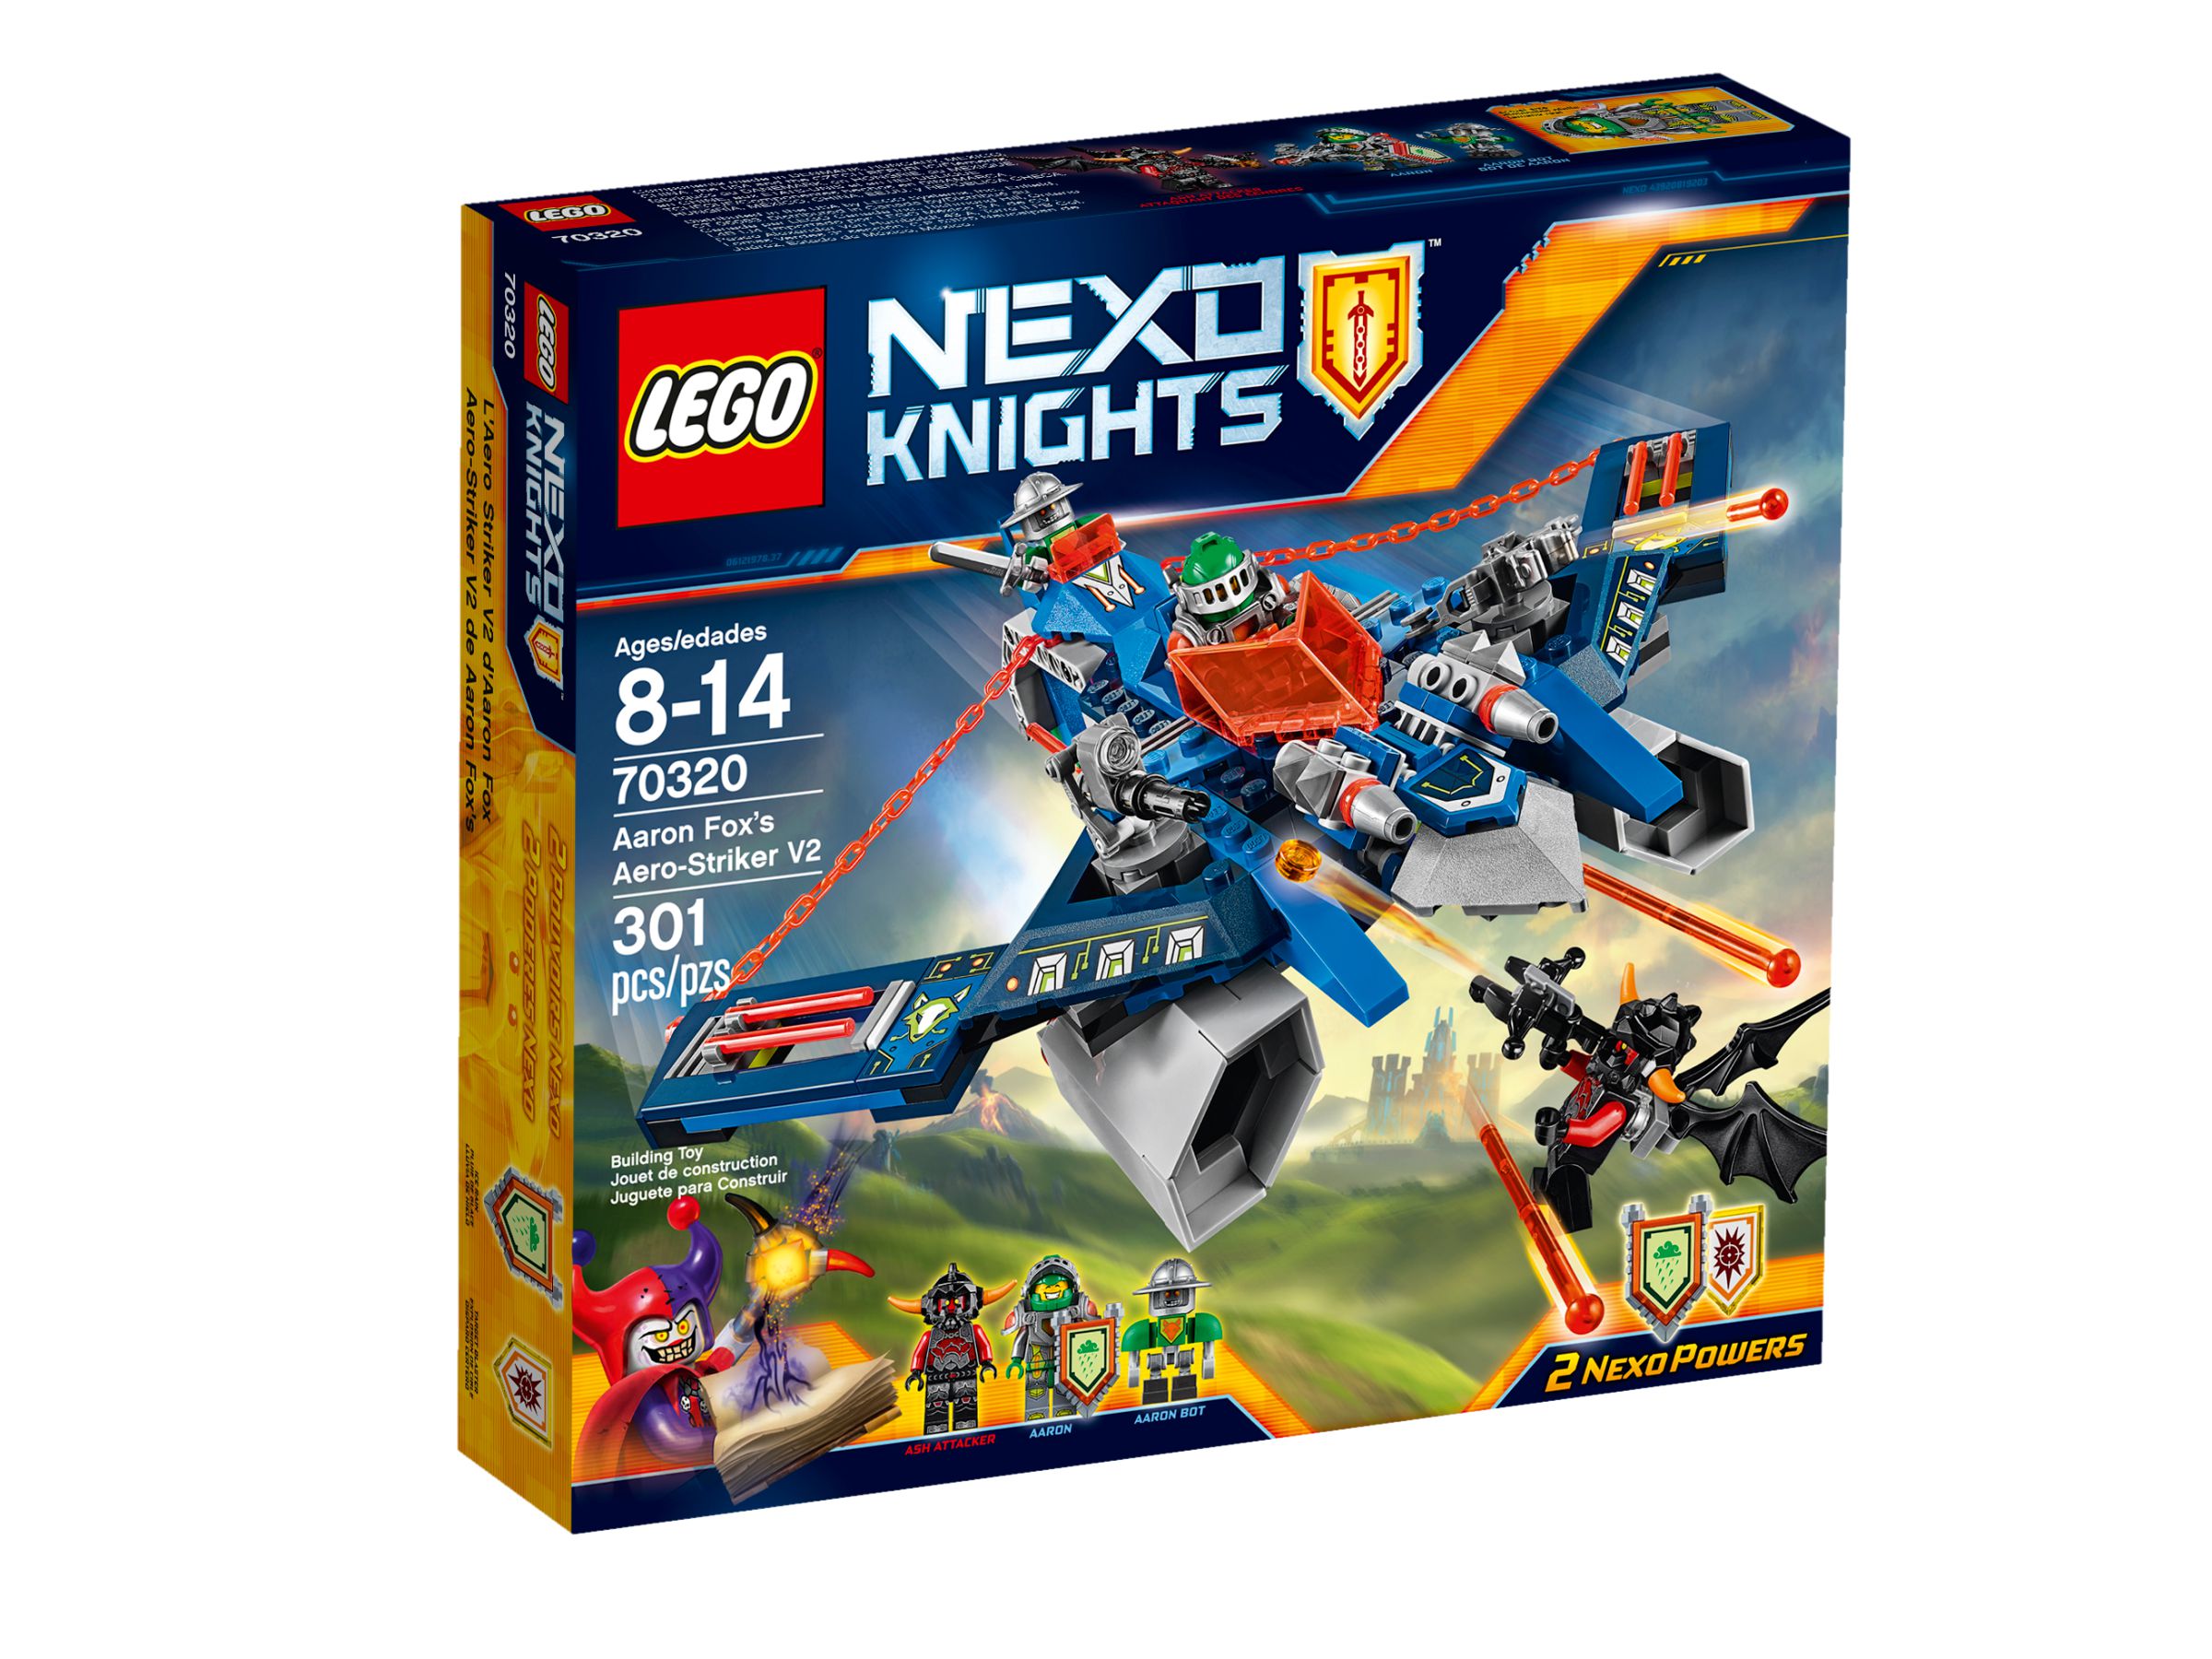 LEGO Nexo Knights 70320 Aarons Aero-Flieger V2 LEGO_70320_alt1.jpg